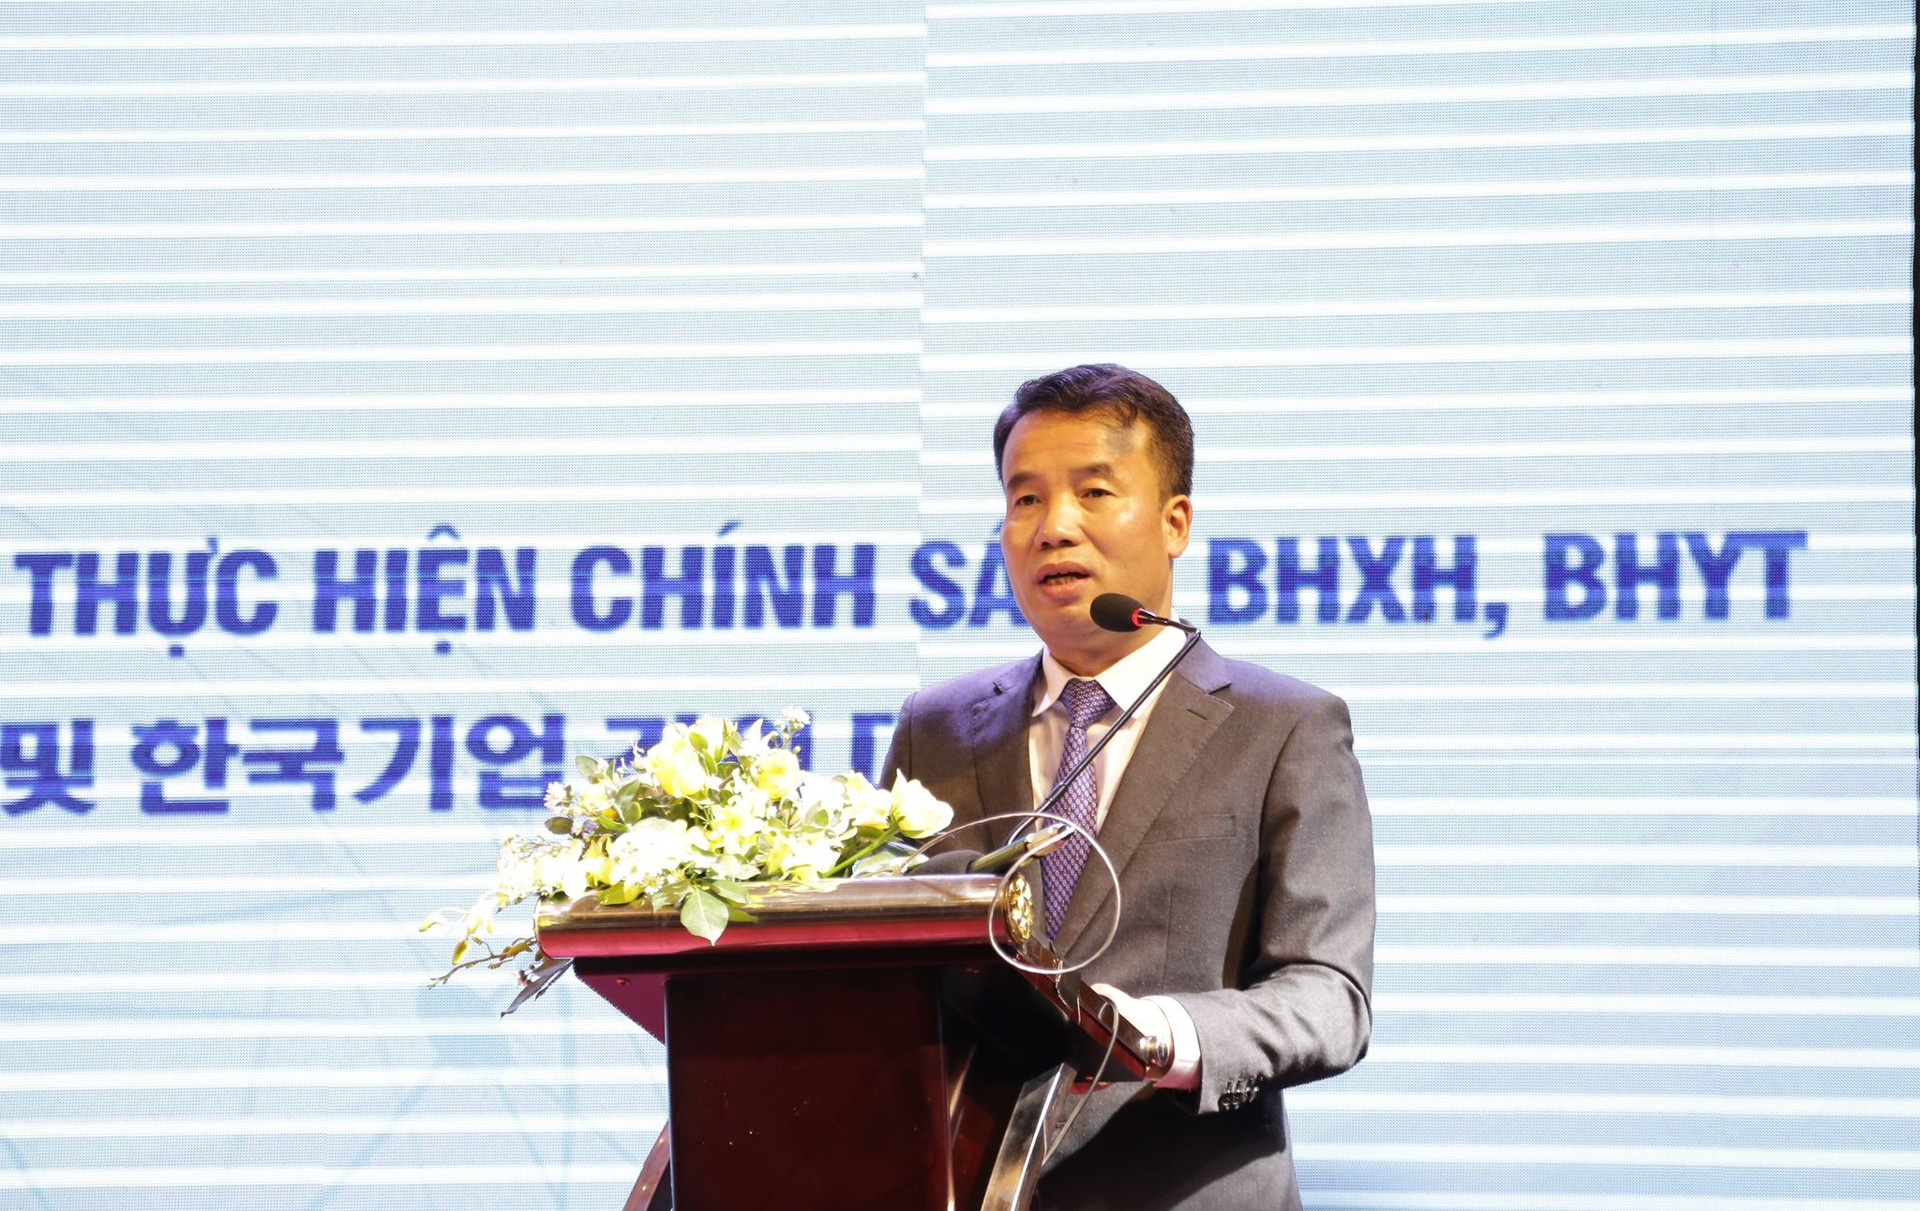 Tổng giám đốc BHXH Việt Nam Nguyễn Thế Mạnh phát biểu tại buổi đối thoại với doanh nghiệp Hàn Quốc.